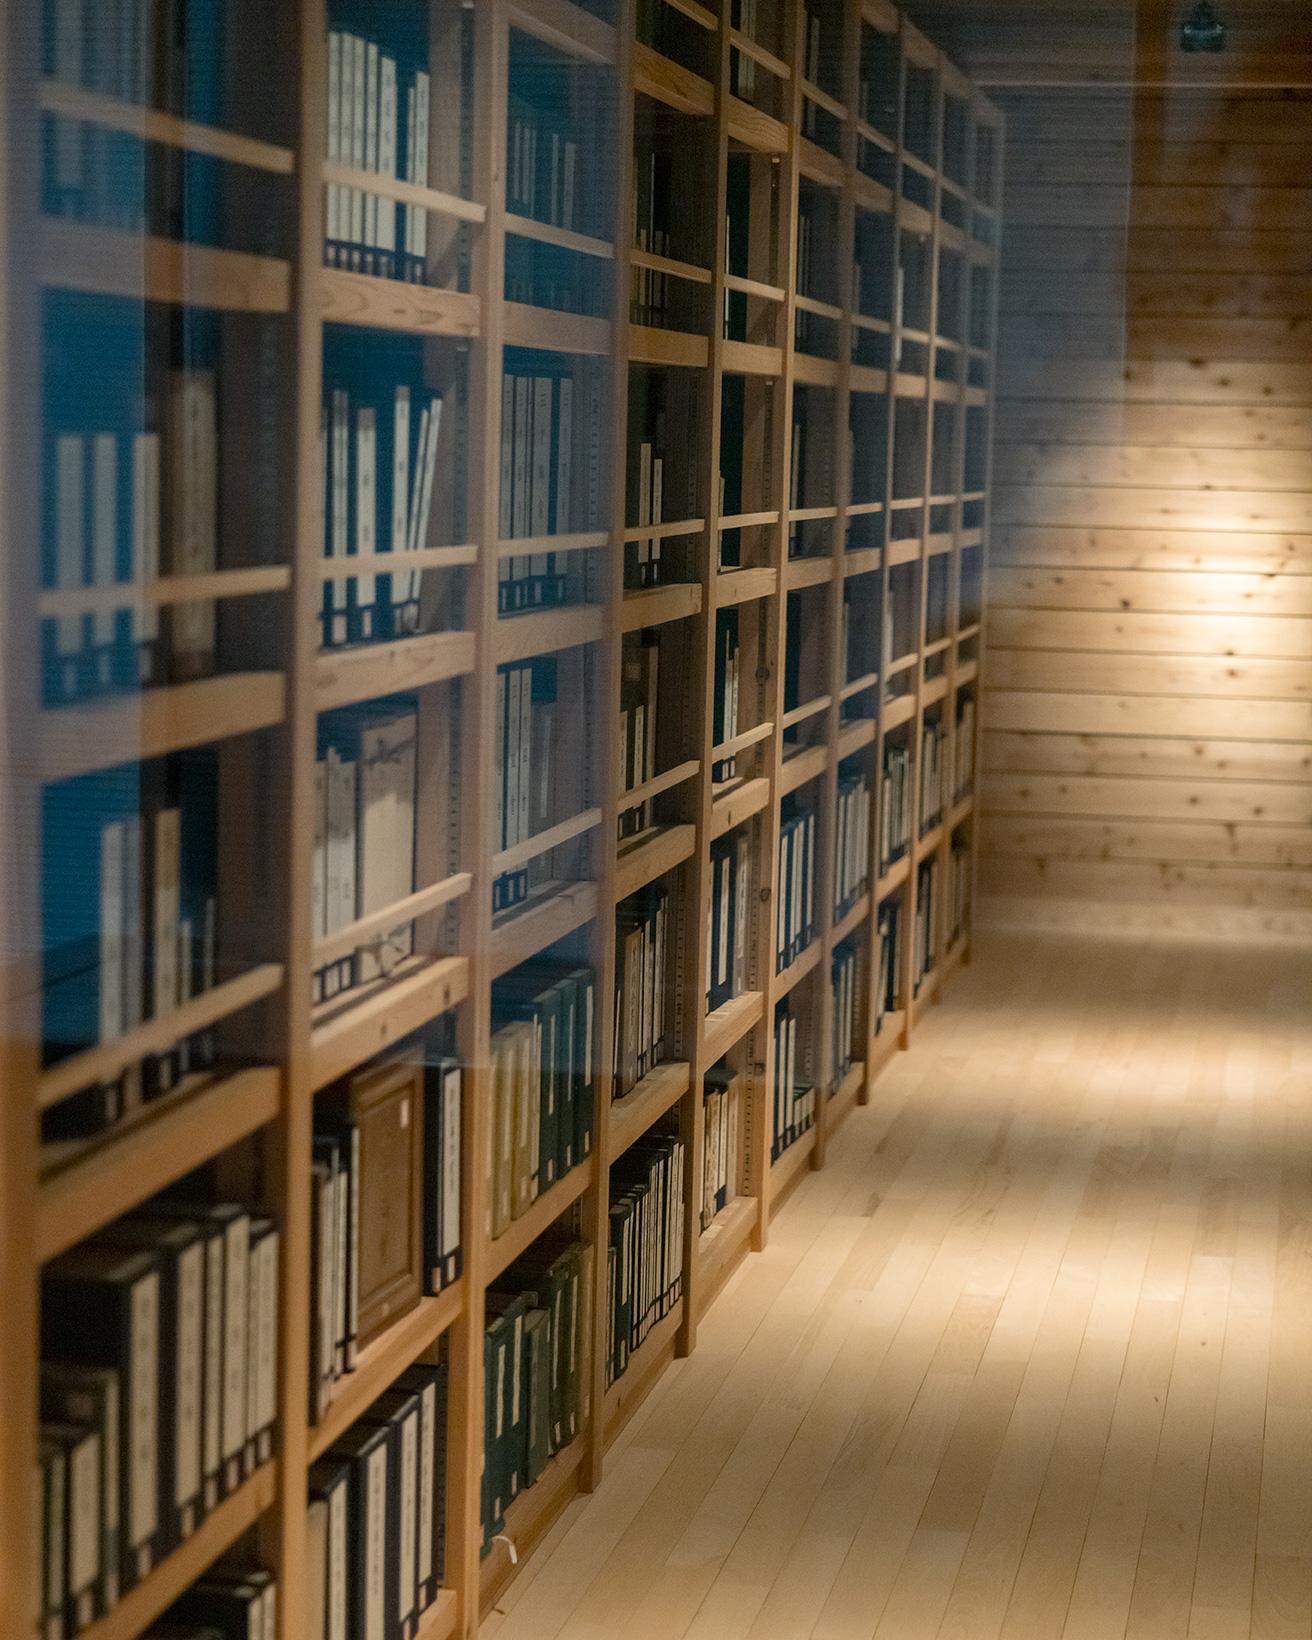 牧野博士の蔵書や遺品など、約60,000点を収蔵する牧野文庫は外からの見学のみ。研究調査での利用が可能。